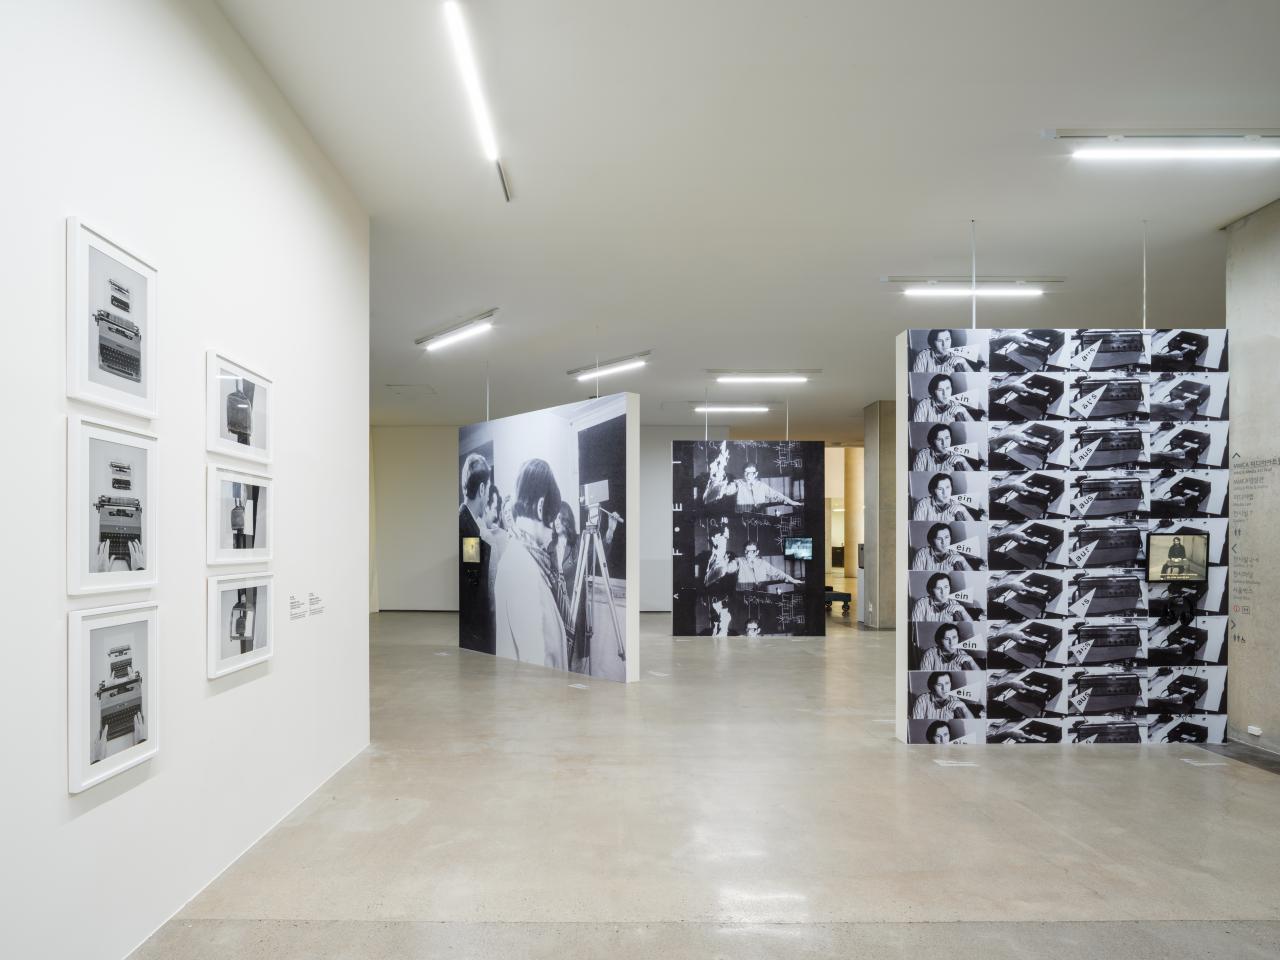 Zu sehen ist ein Ausstellungsraum. Drei große schwarz-weiß Bilder teilen den Raum auf. Links an der Wand hängen 6 schwarz-weiß Fotografien in weißen Bilderrahmen.